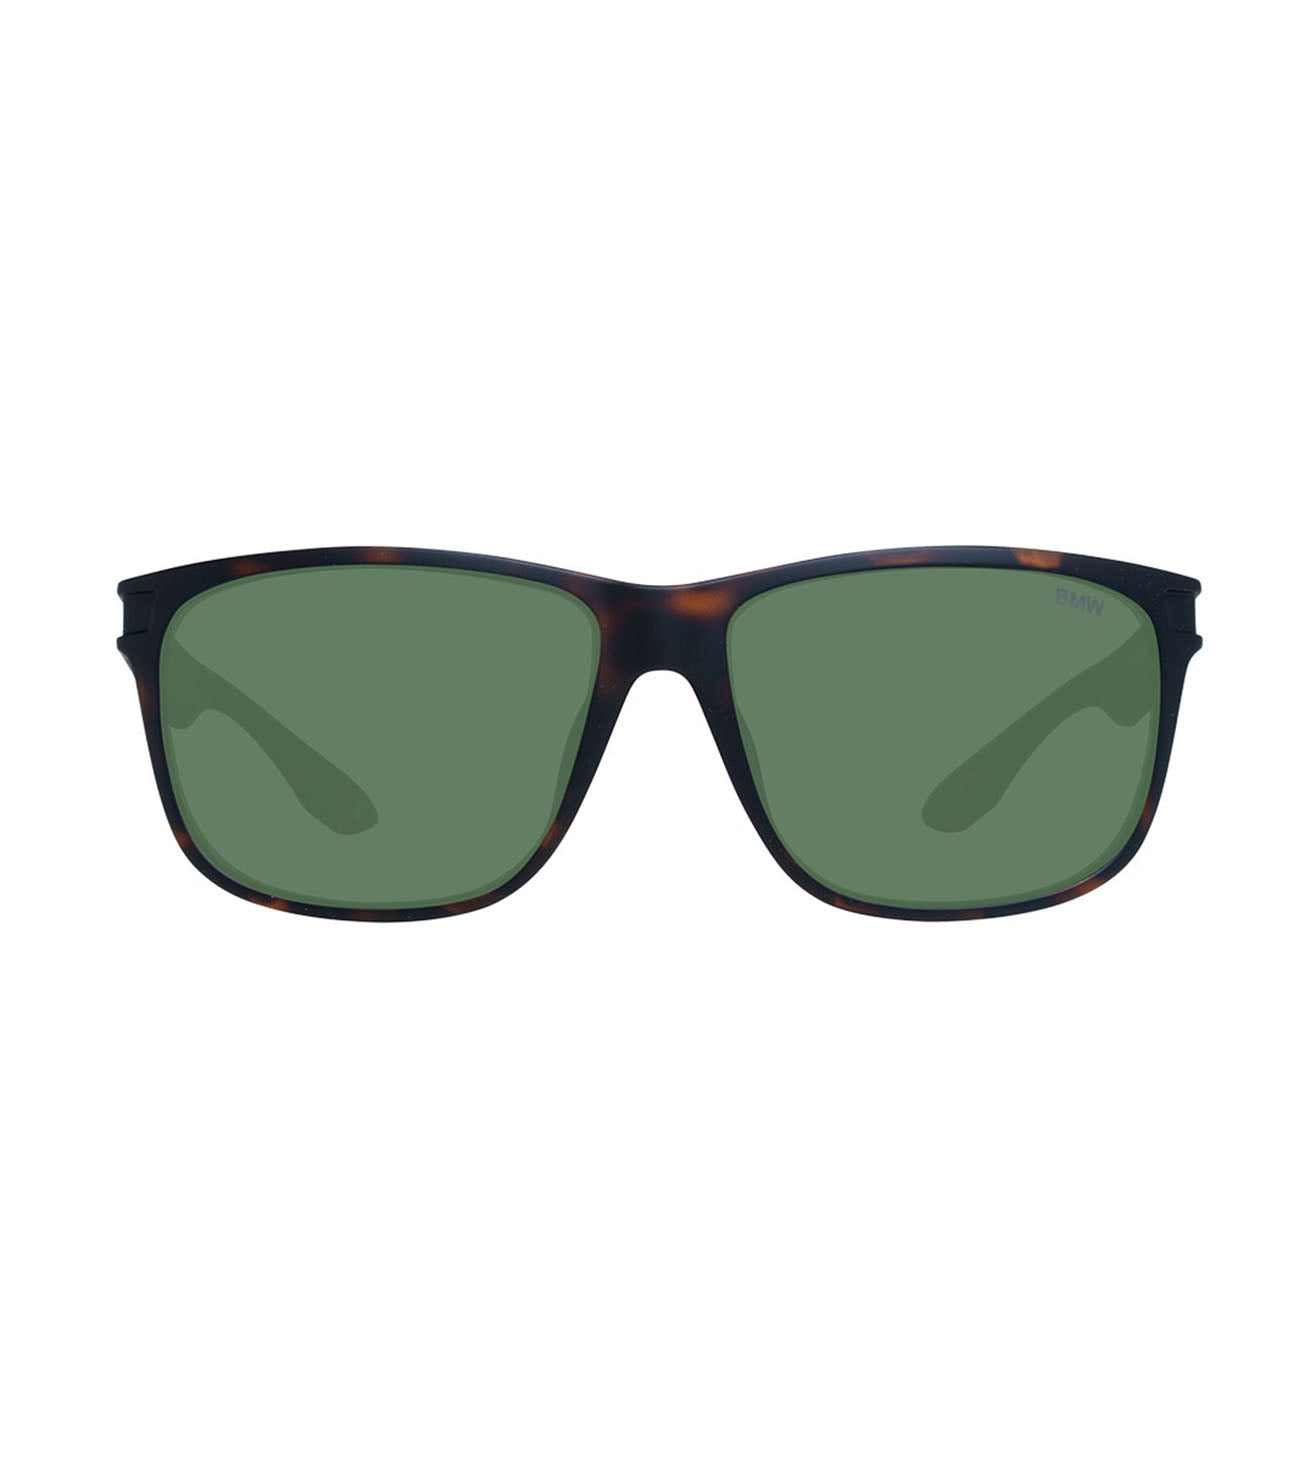 BMW Men's Green Square Sunglasses